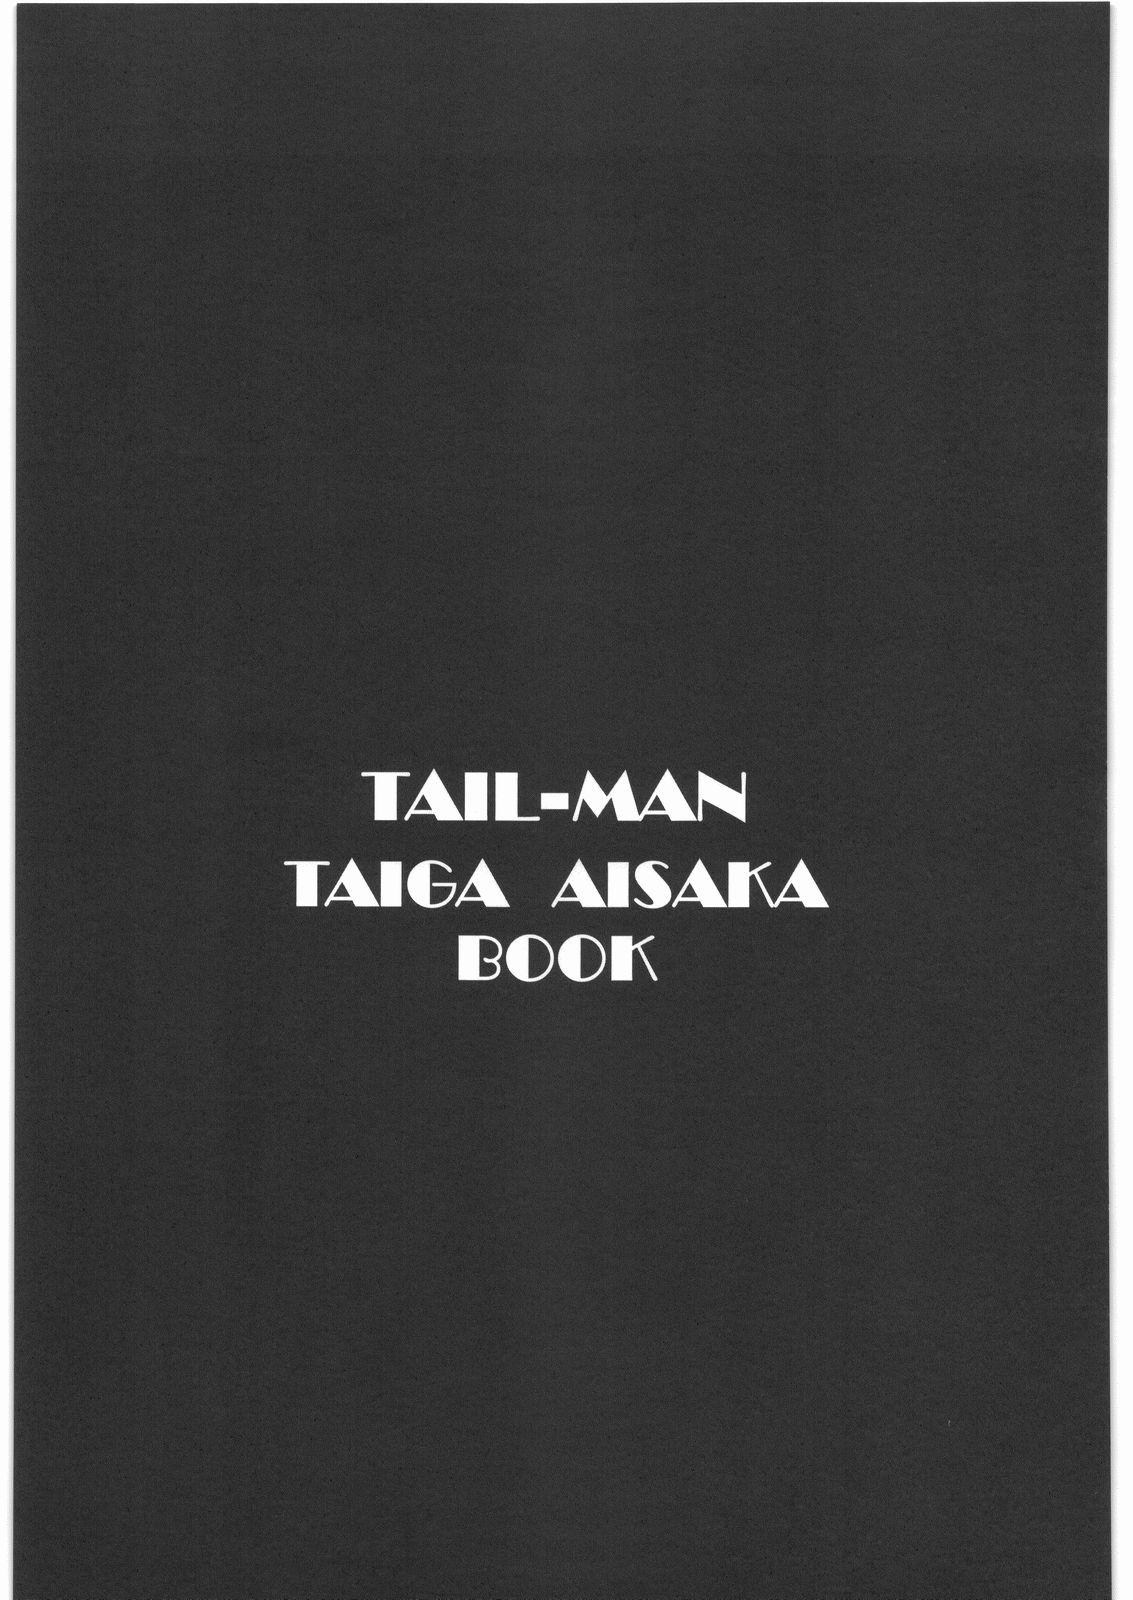 TAIL-MAN TAIGA AISAKA BOOK 1